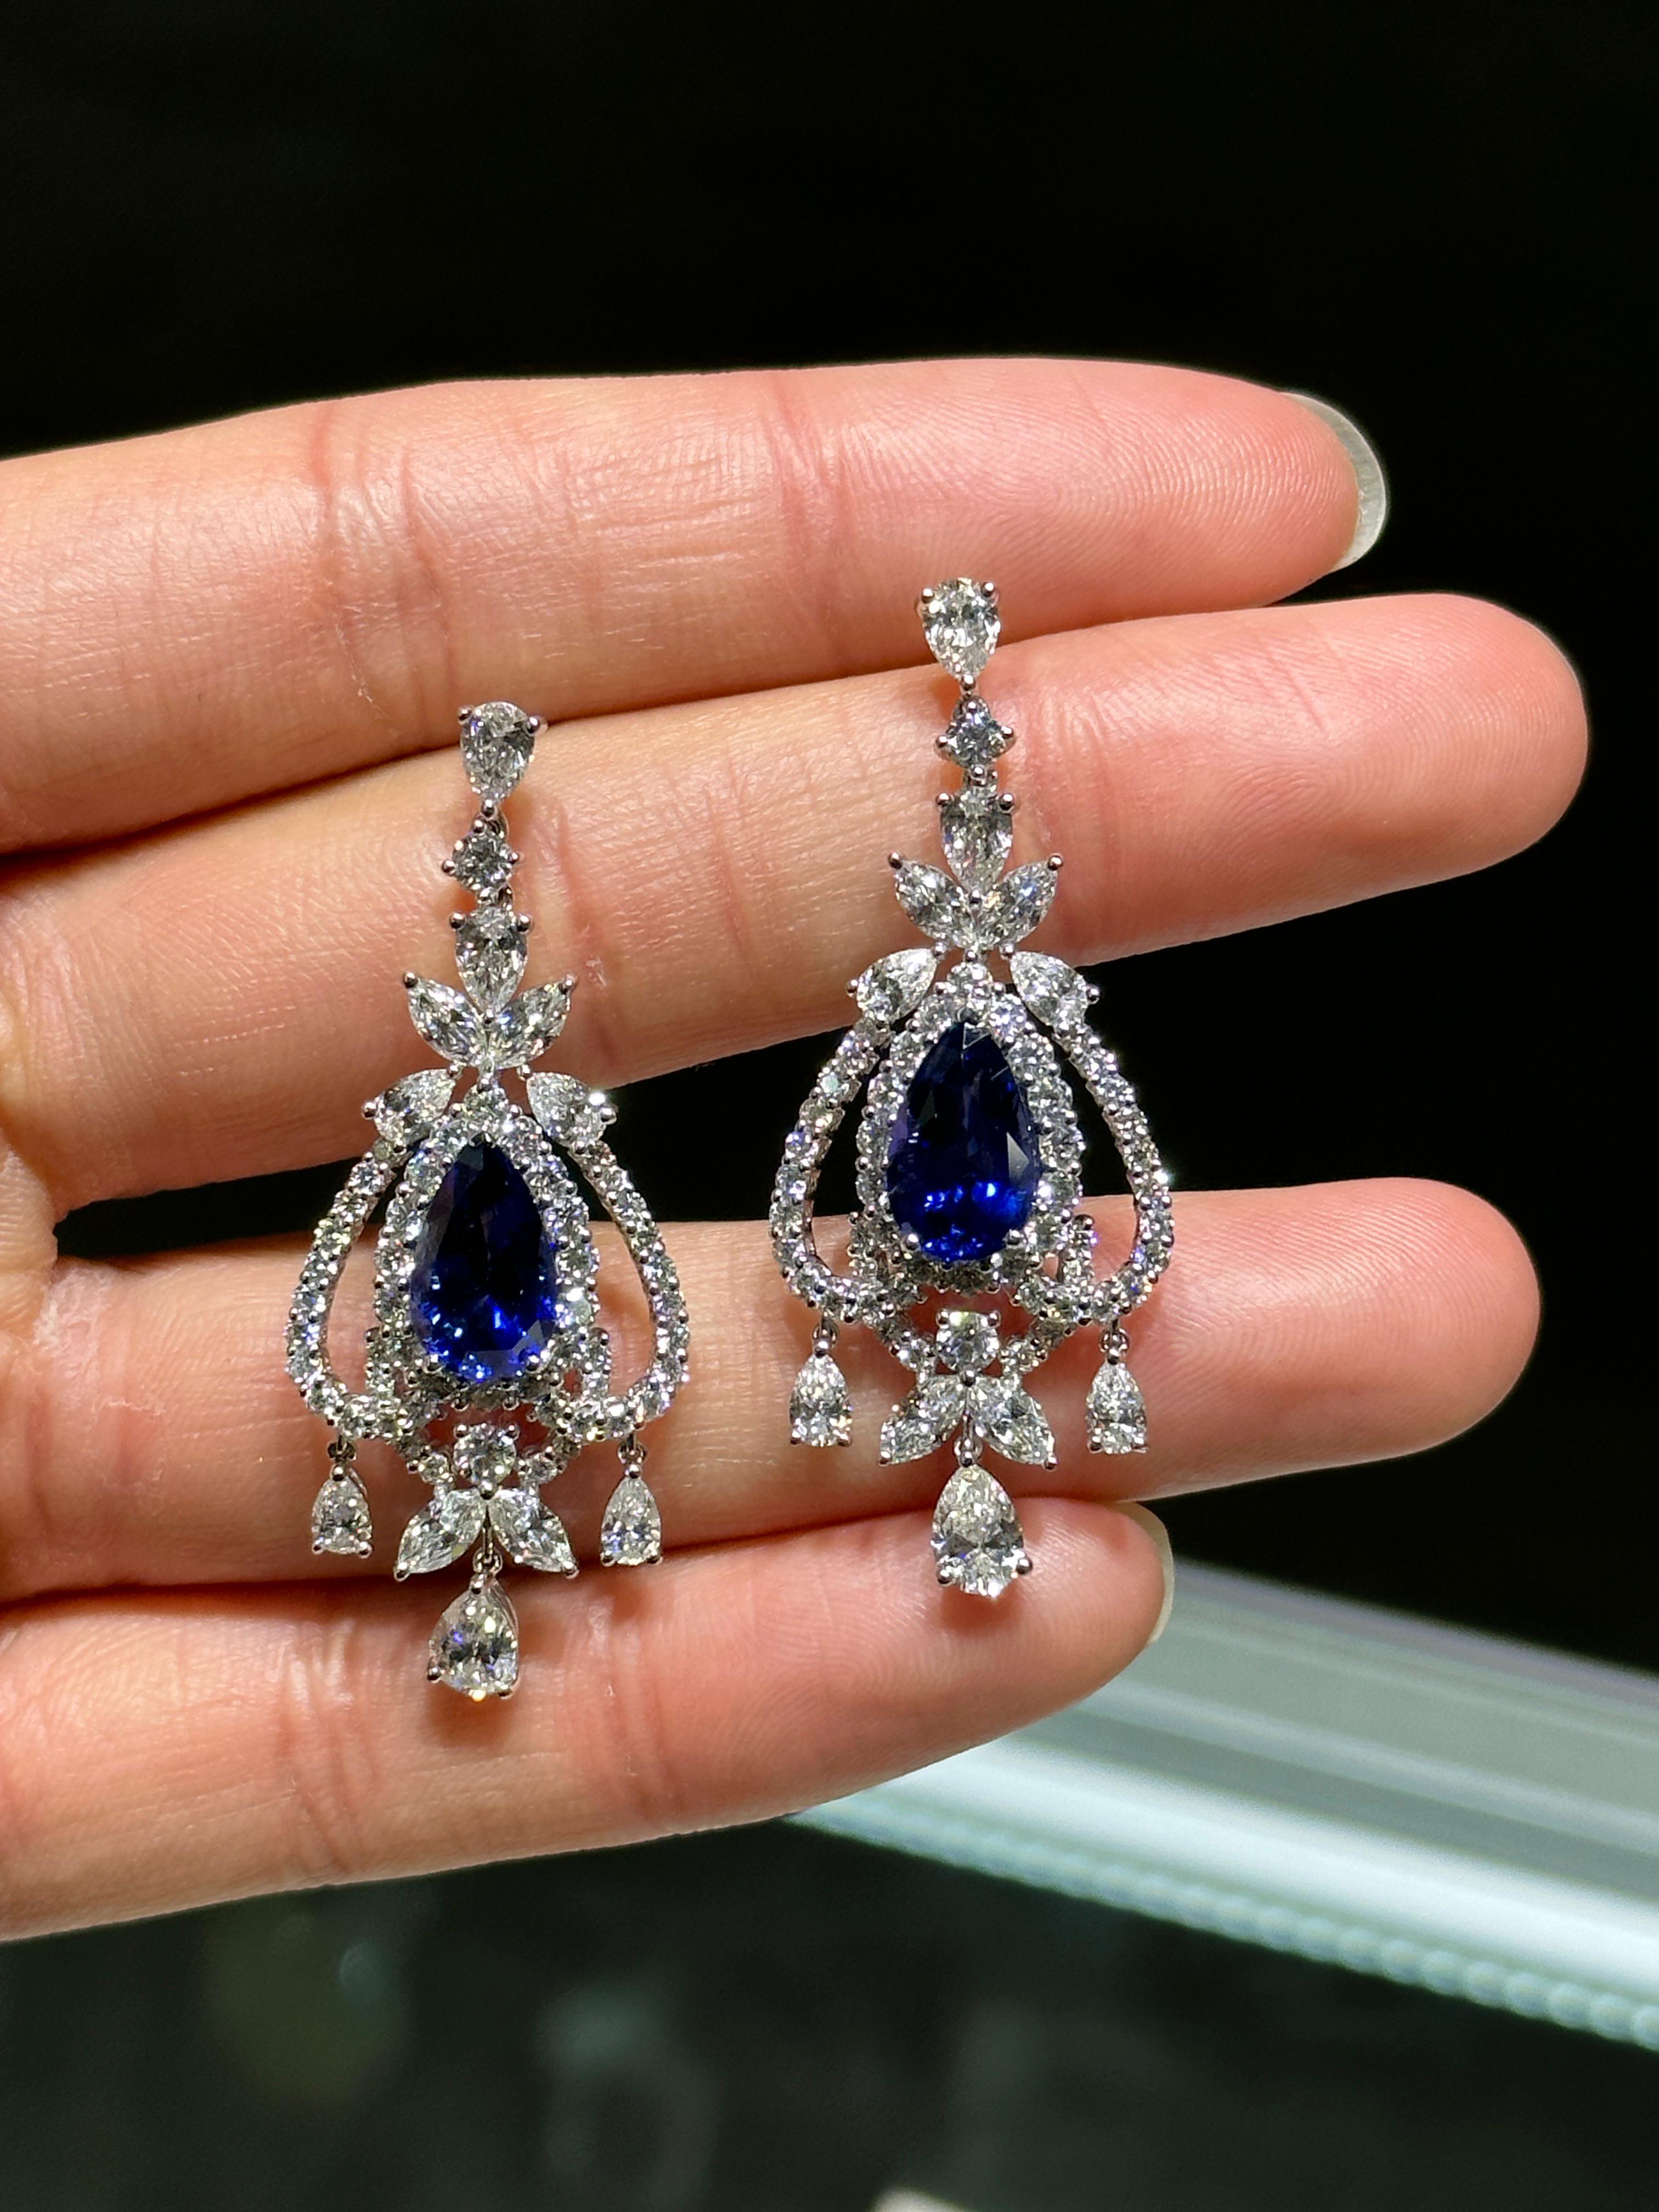 Das folgende Element, das wir anbieten, ist eine seltene wichtige Radiant 18KT Gold Large Rare Fancy Blue Ceylon Sapphire and Diamond Earrings. Die Ohrringe bestehen aus wunderschönen blauen Ceylon-Saphiren, die spektakulär in Diamanten im